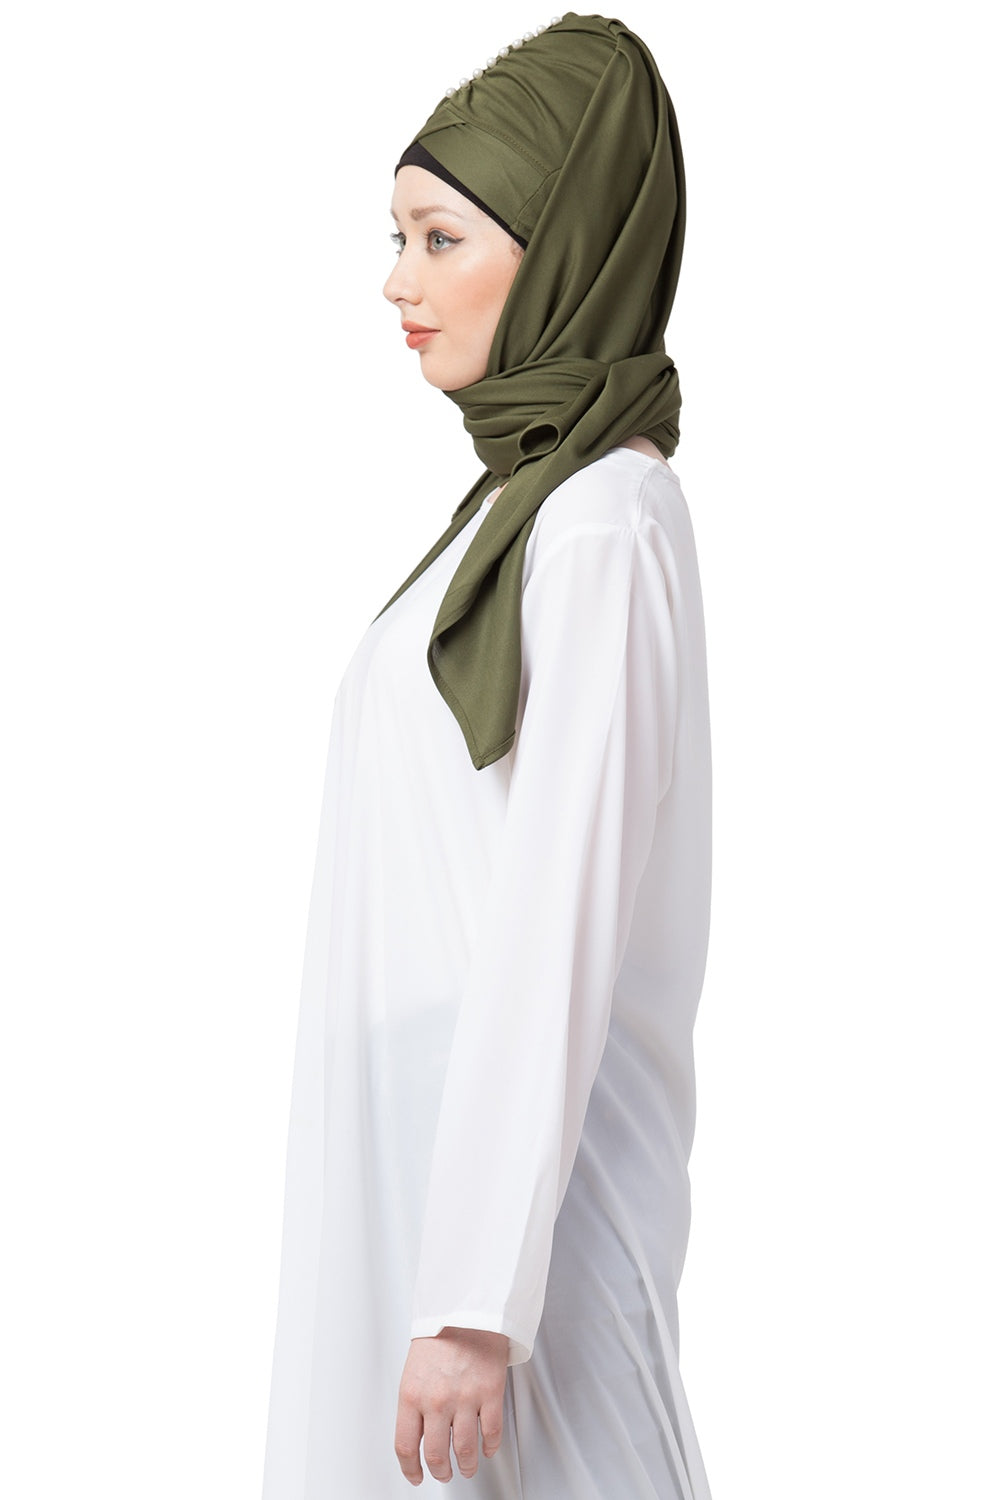 Islamic Hijab for Women